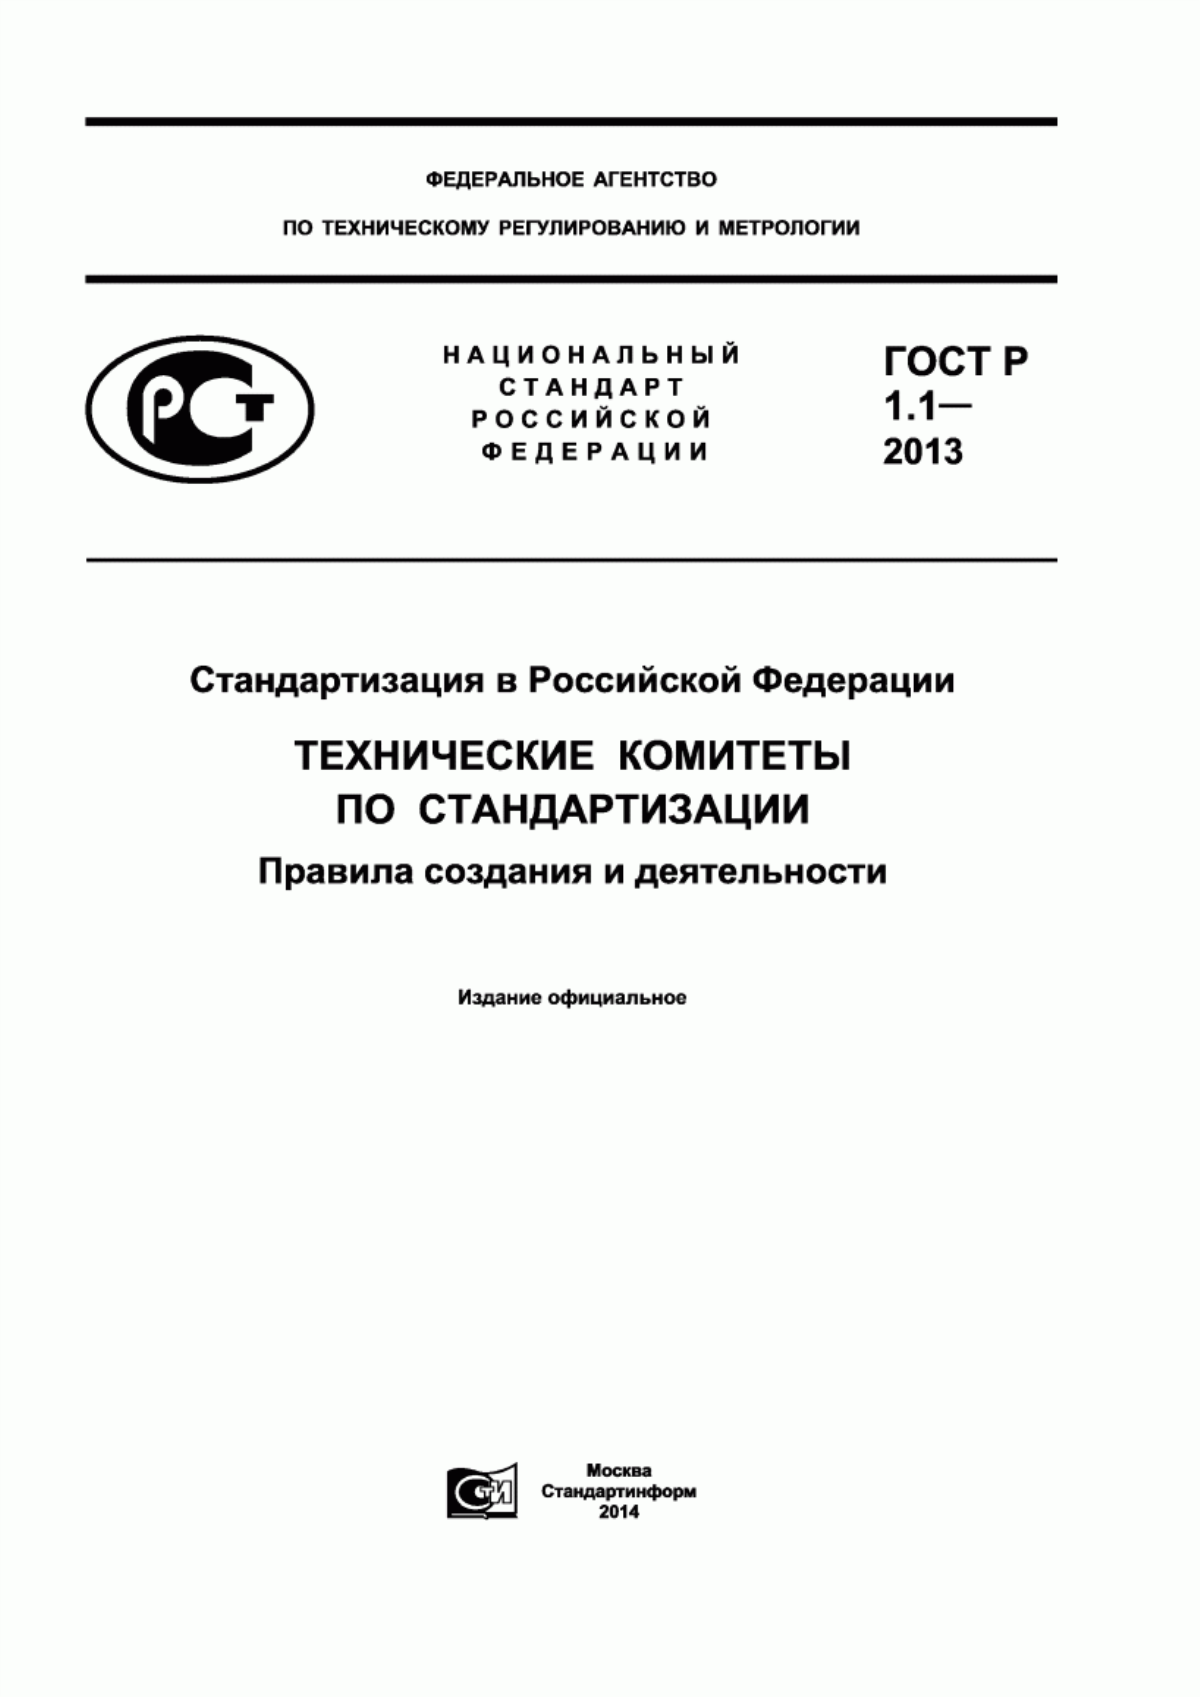 ГОСТ Р 1.1-2013 Стандартизация в Российской Федерации. Технические комитеты по стандартизации. Правила создания и деятельности